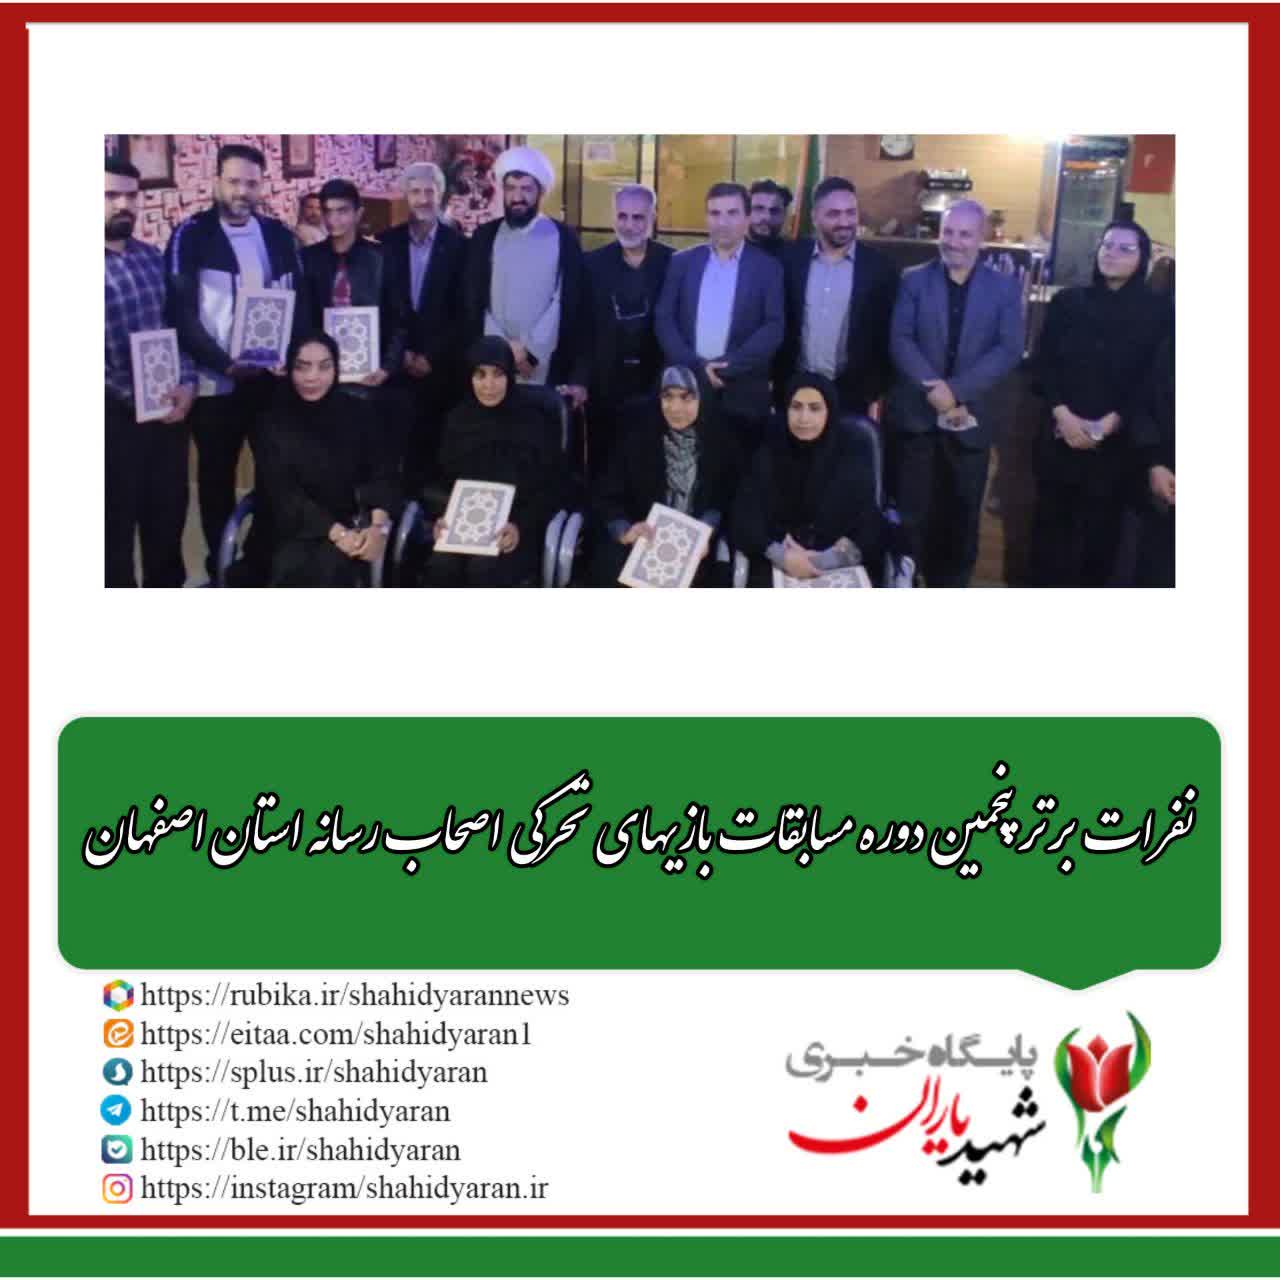 رئیس کمیته ورزشهای الکترونیک هیات ورزشهای همگانی استان اصفهان: